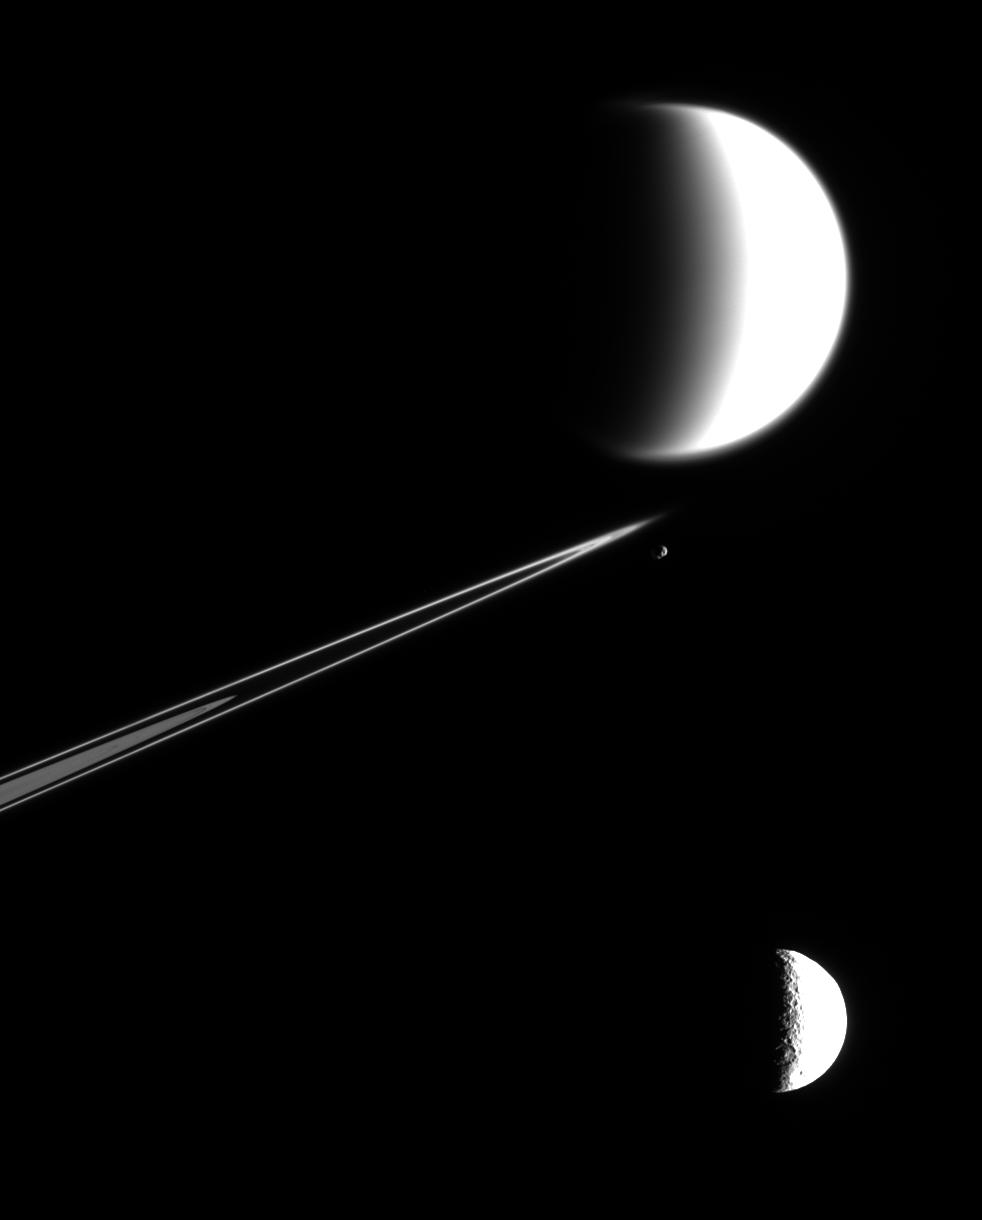 Tethys, Epimetheus, Titan